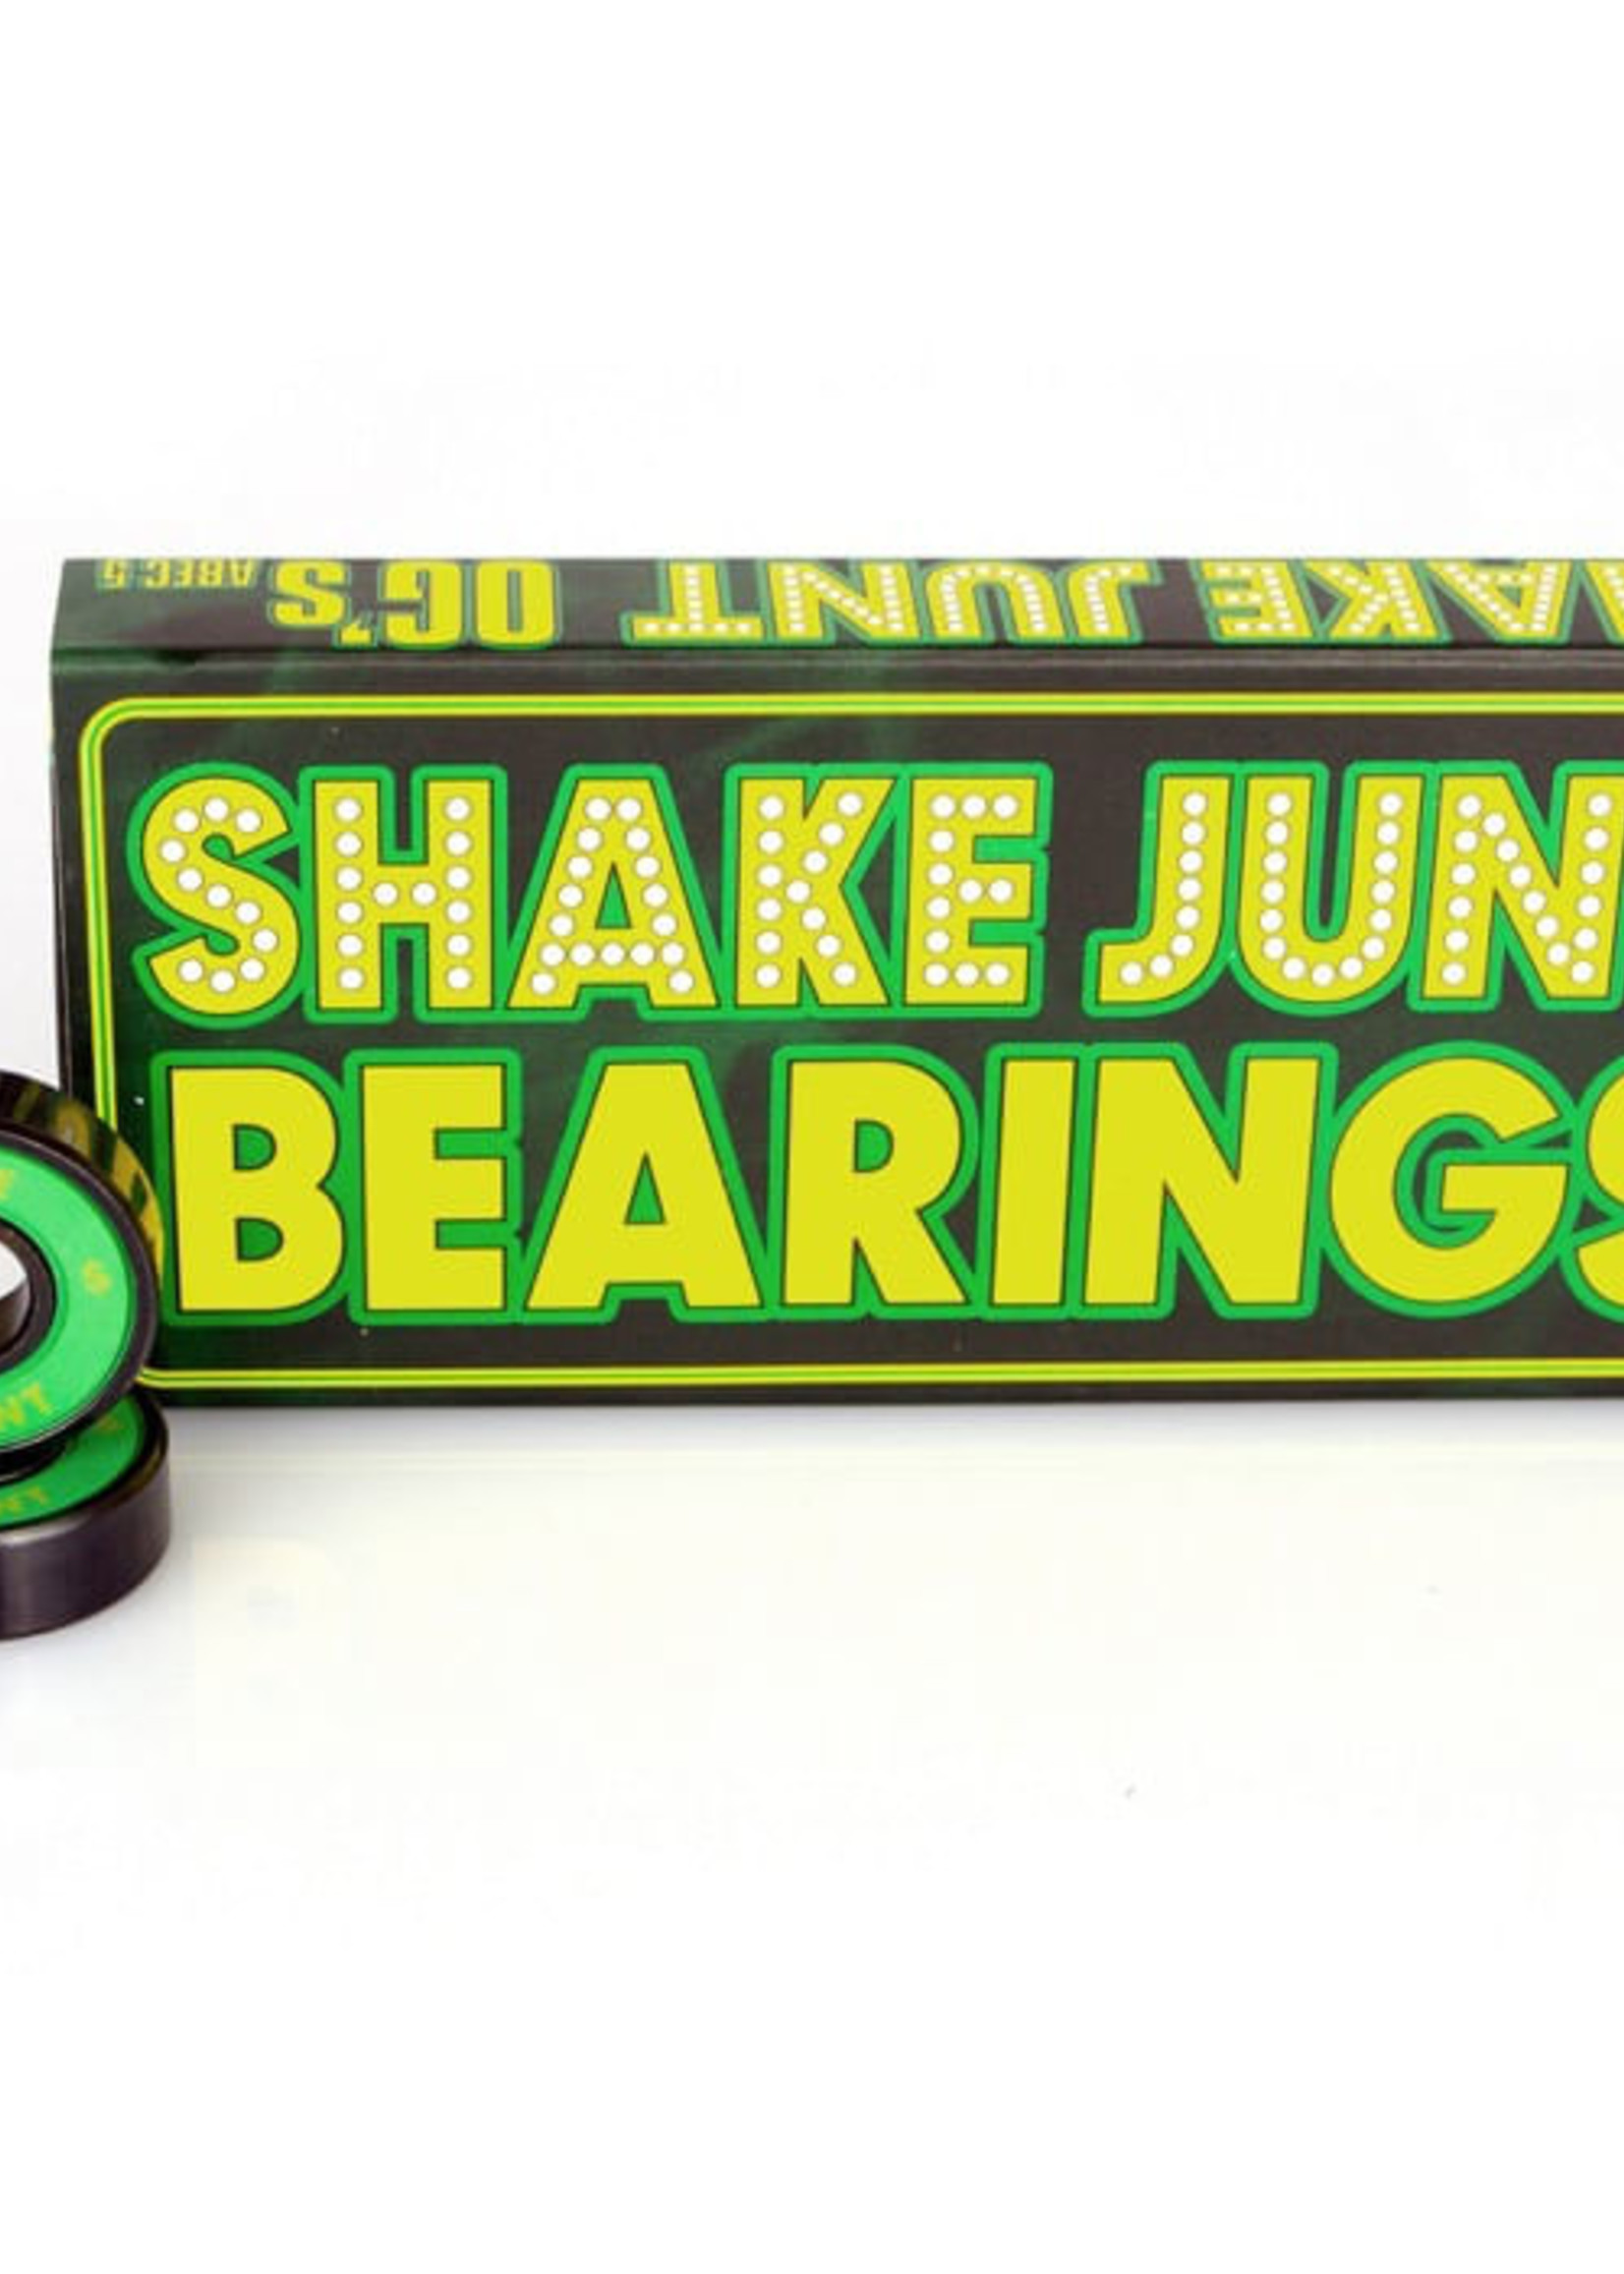 Shake Junt SJ TRIPLE OG'S A-7 BEARINGS single set